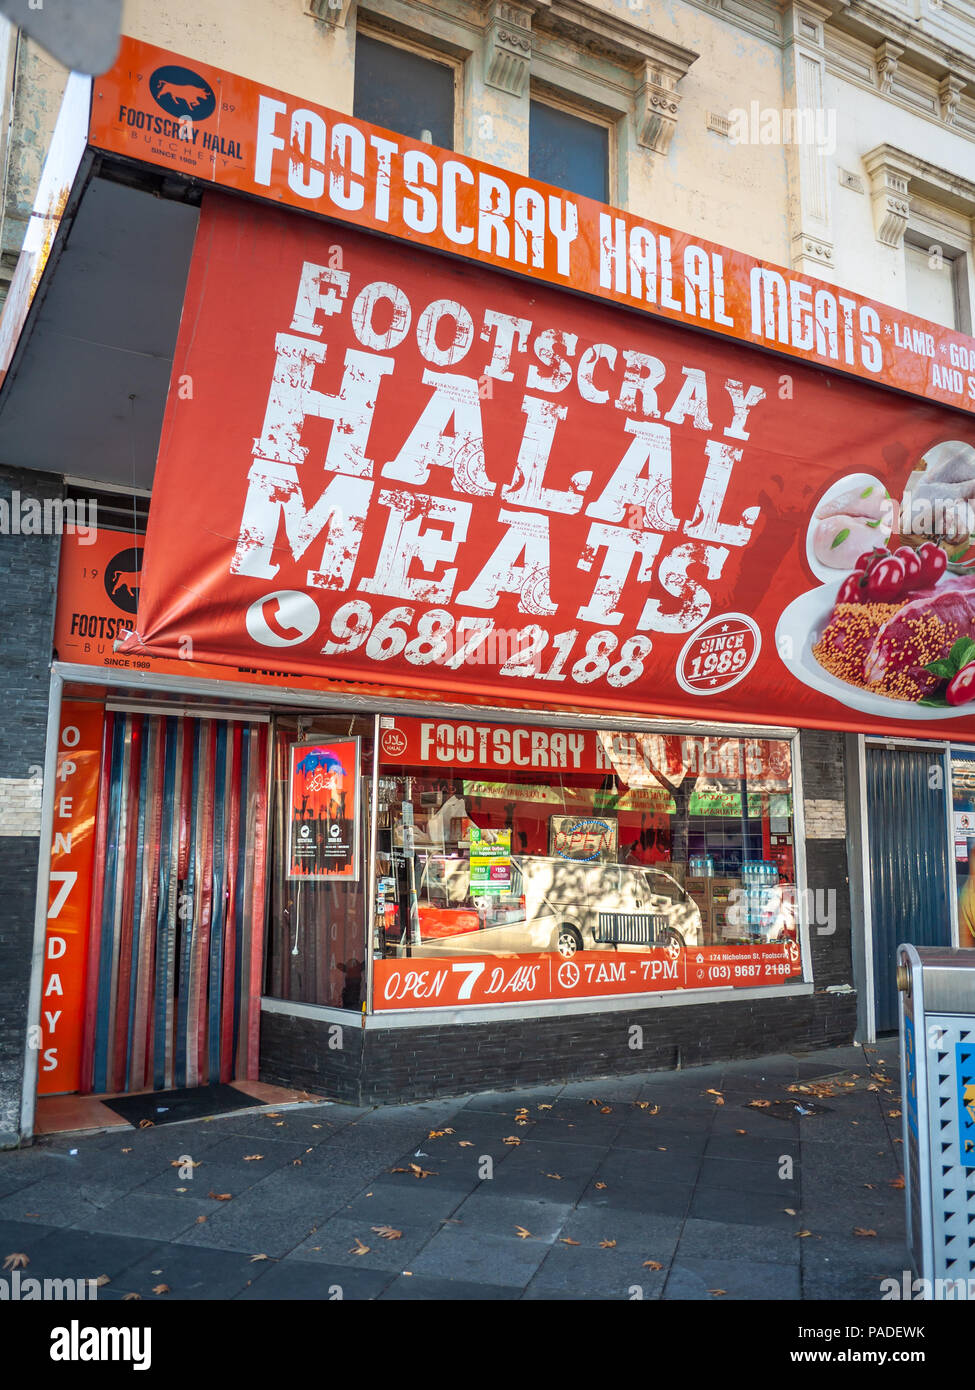 La carne halal Store a Footscray, al suo interno un sobborgo di Melbourne, VIC Australia. Foto Stock